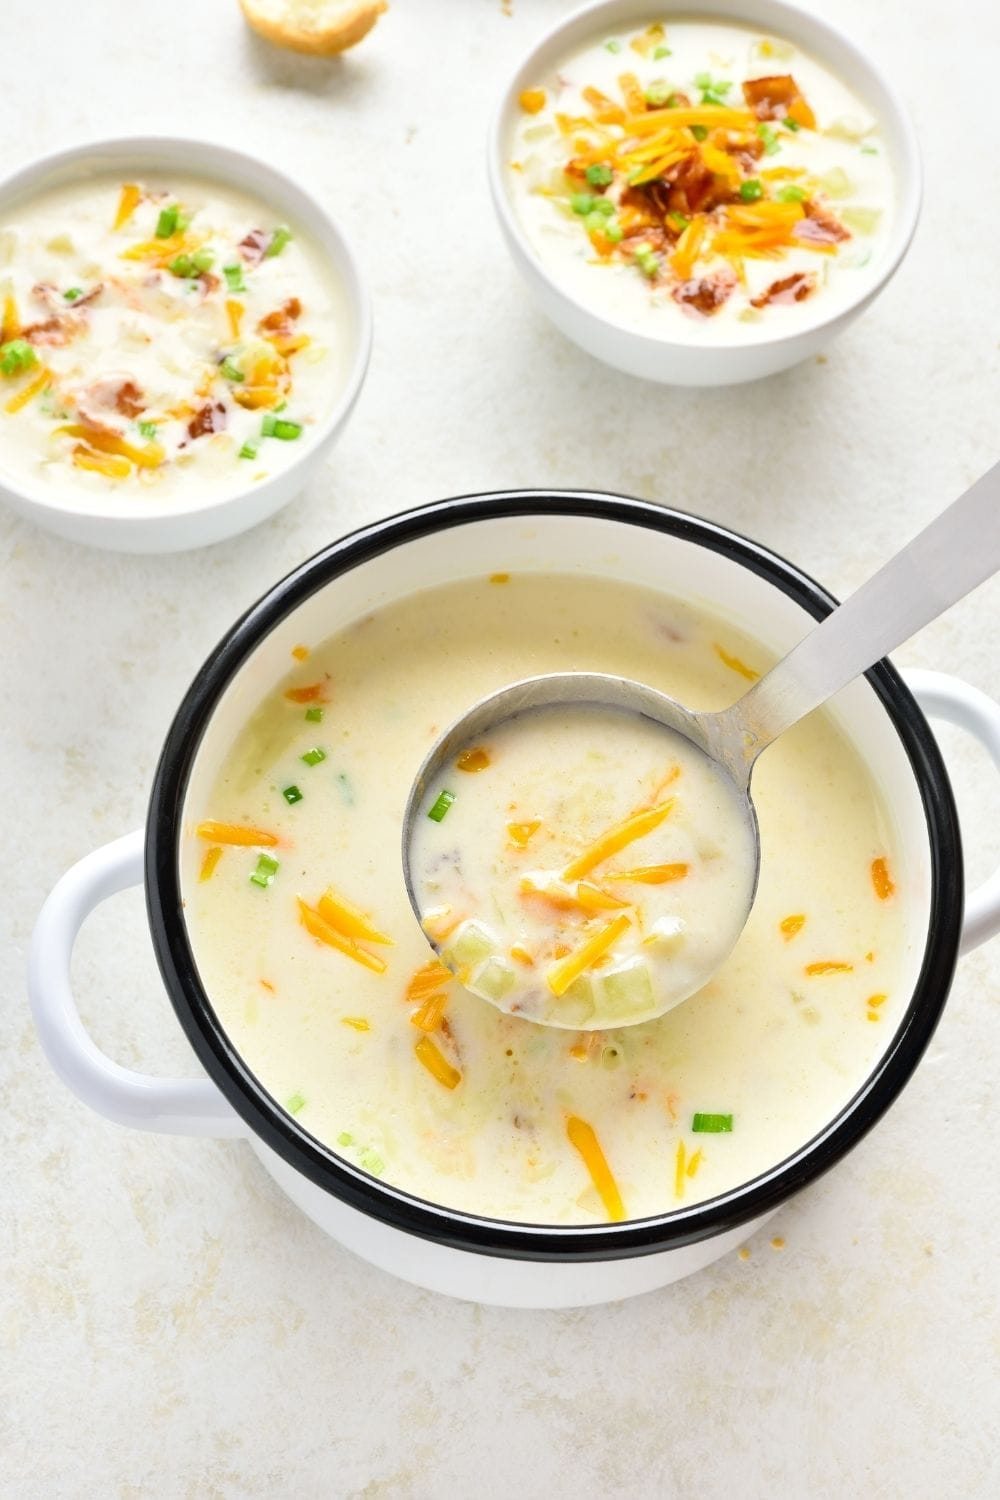 Creamy Potato Soup in a Bowl and Casserole